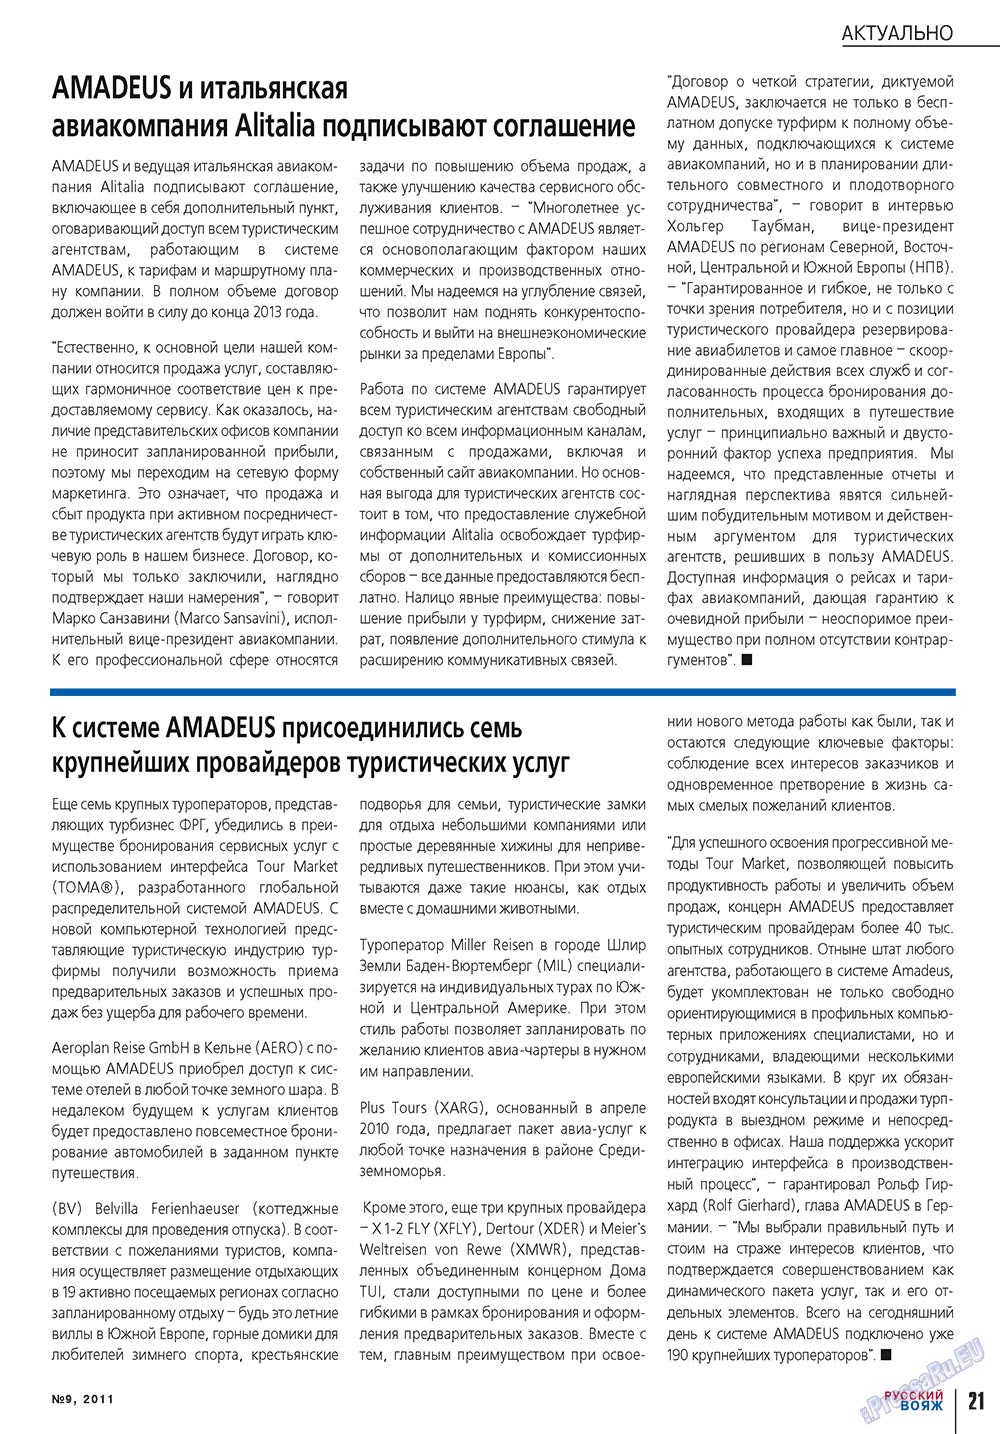 Русский вояж (журнал). 2011 год, номер 9, стр. 21